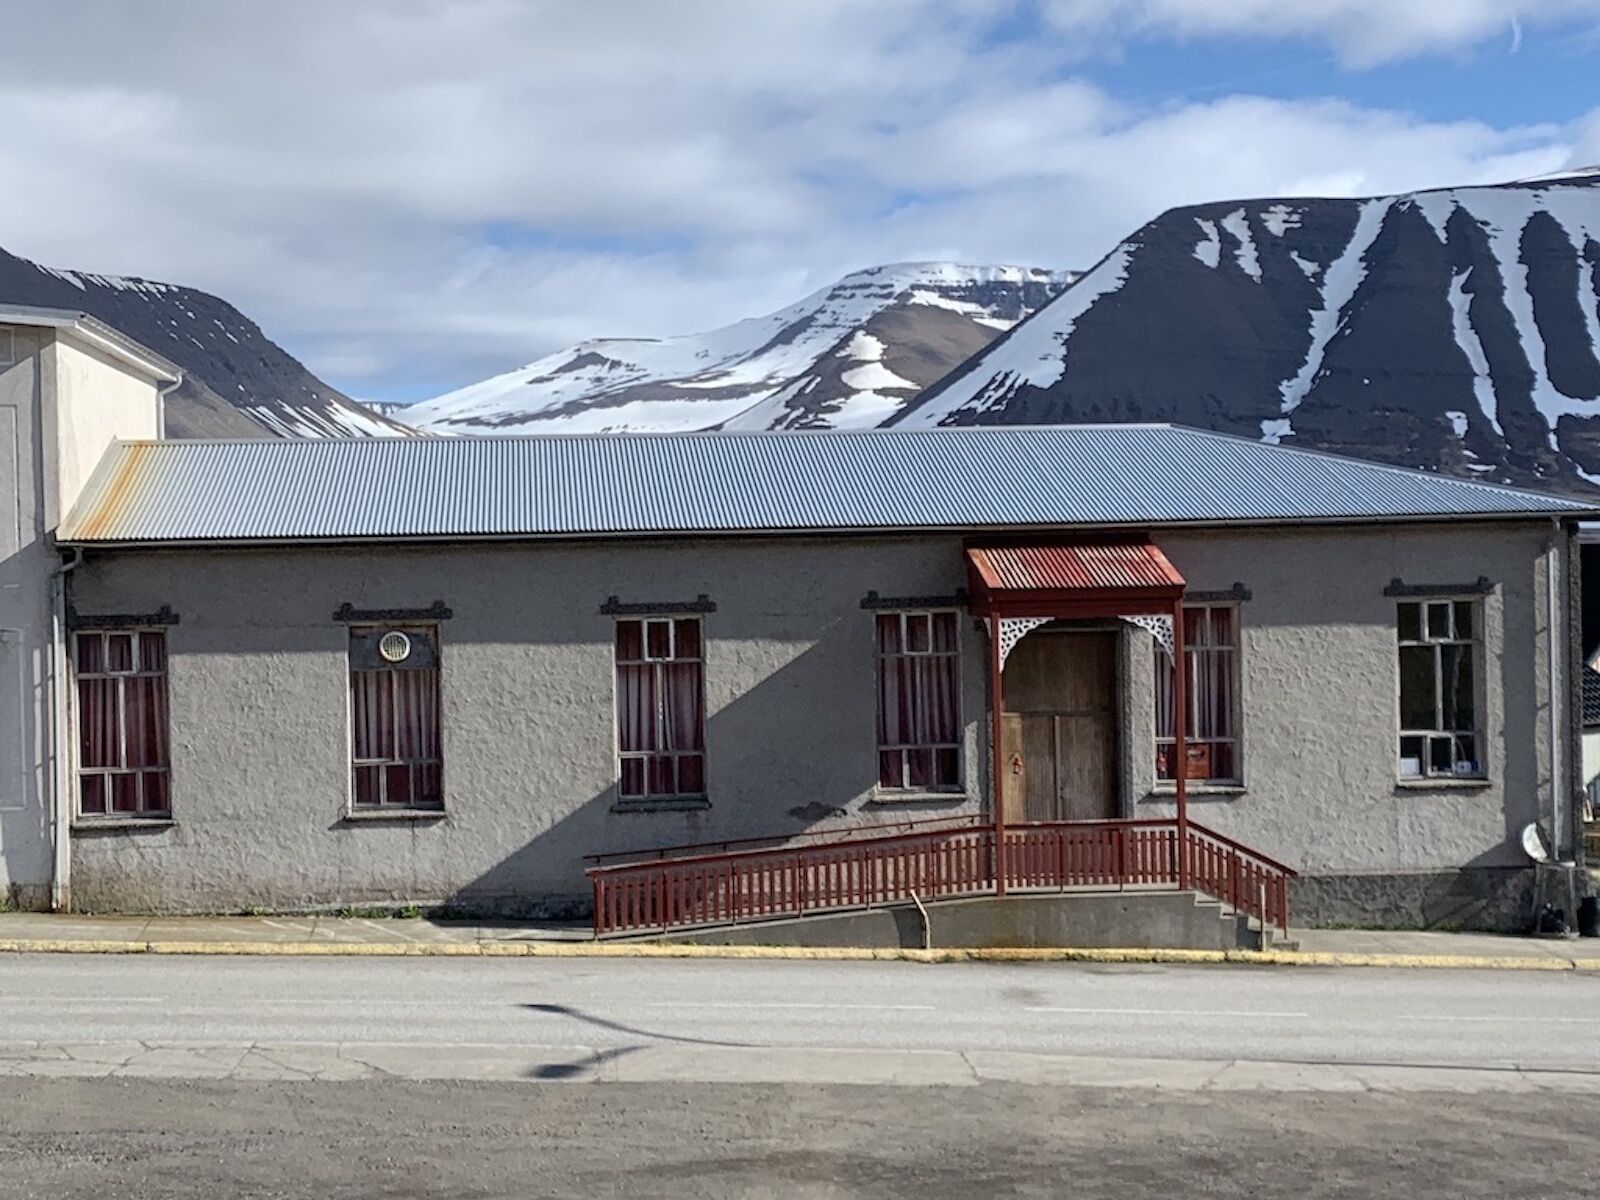 Félagsheimilið, the Thingeyri community center